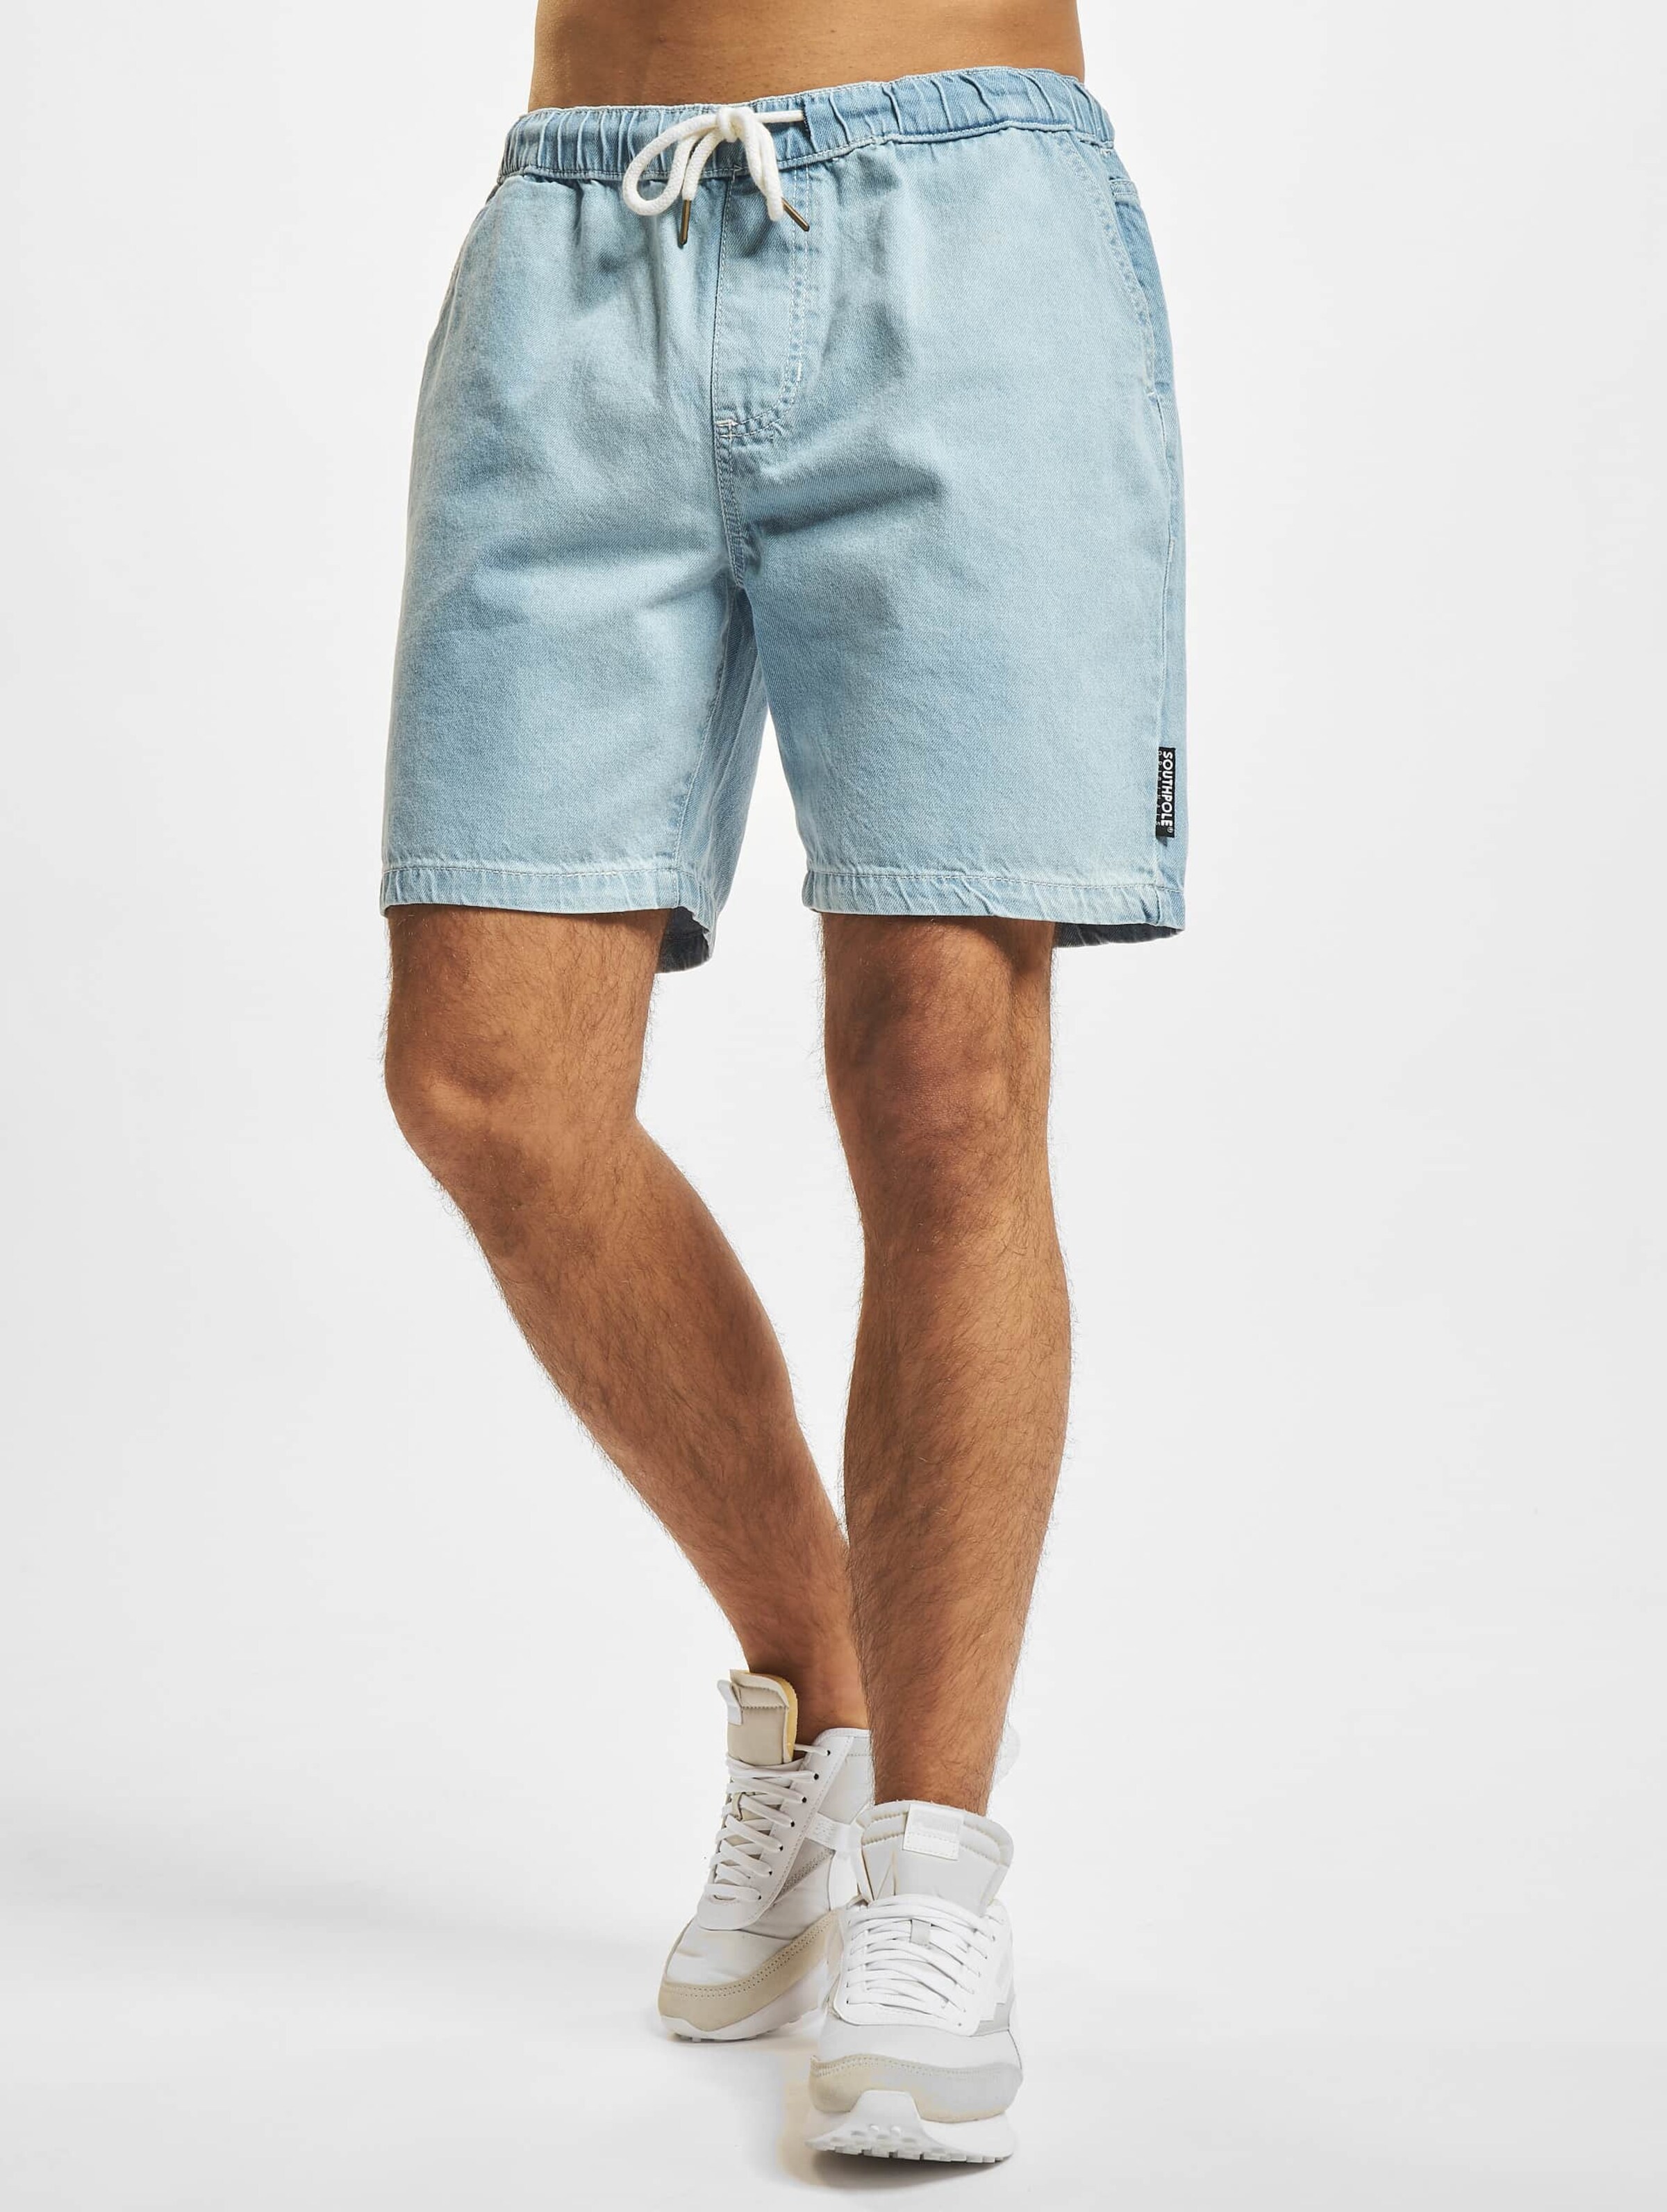 Men's South Pole Denim Shorts- Size 42 – Refa's Thrift Closet